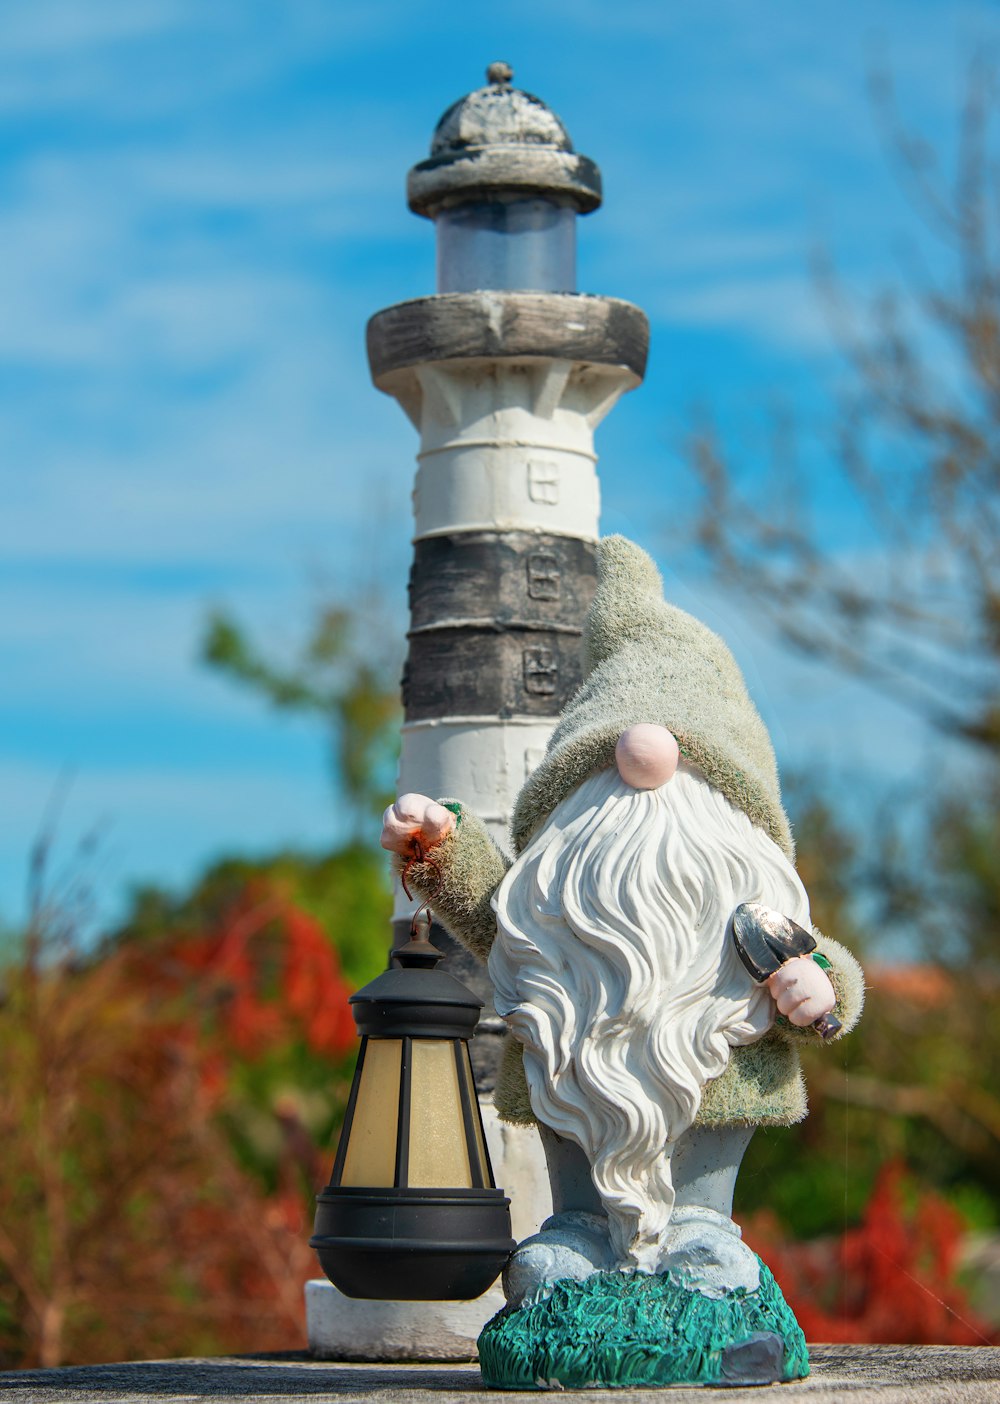 a statue of a gnome next to a light pole